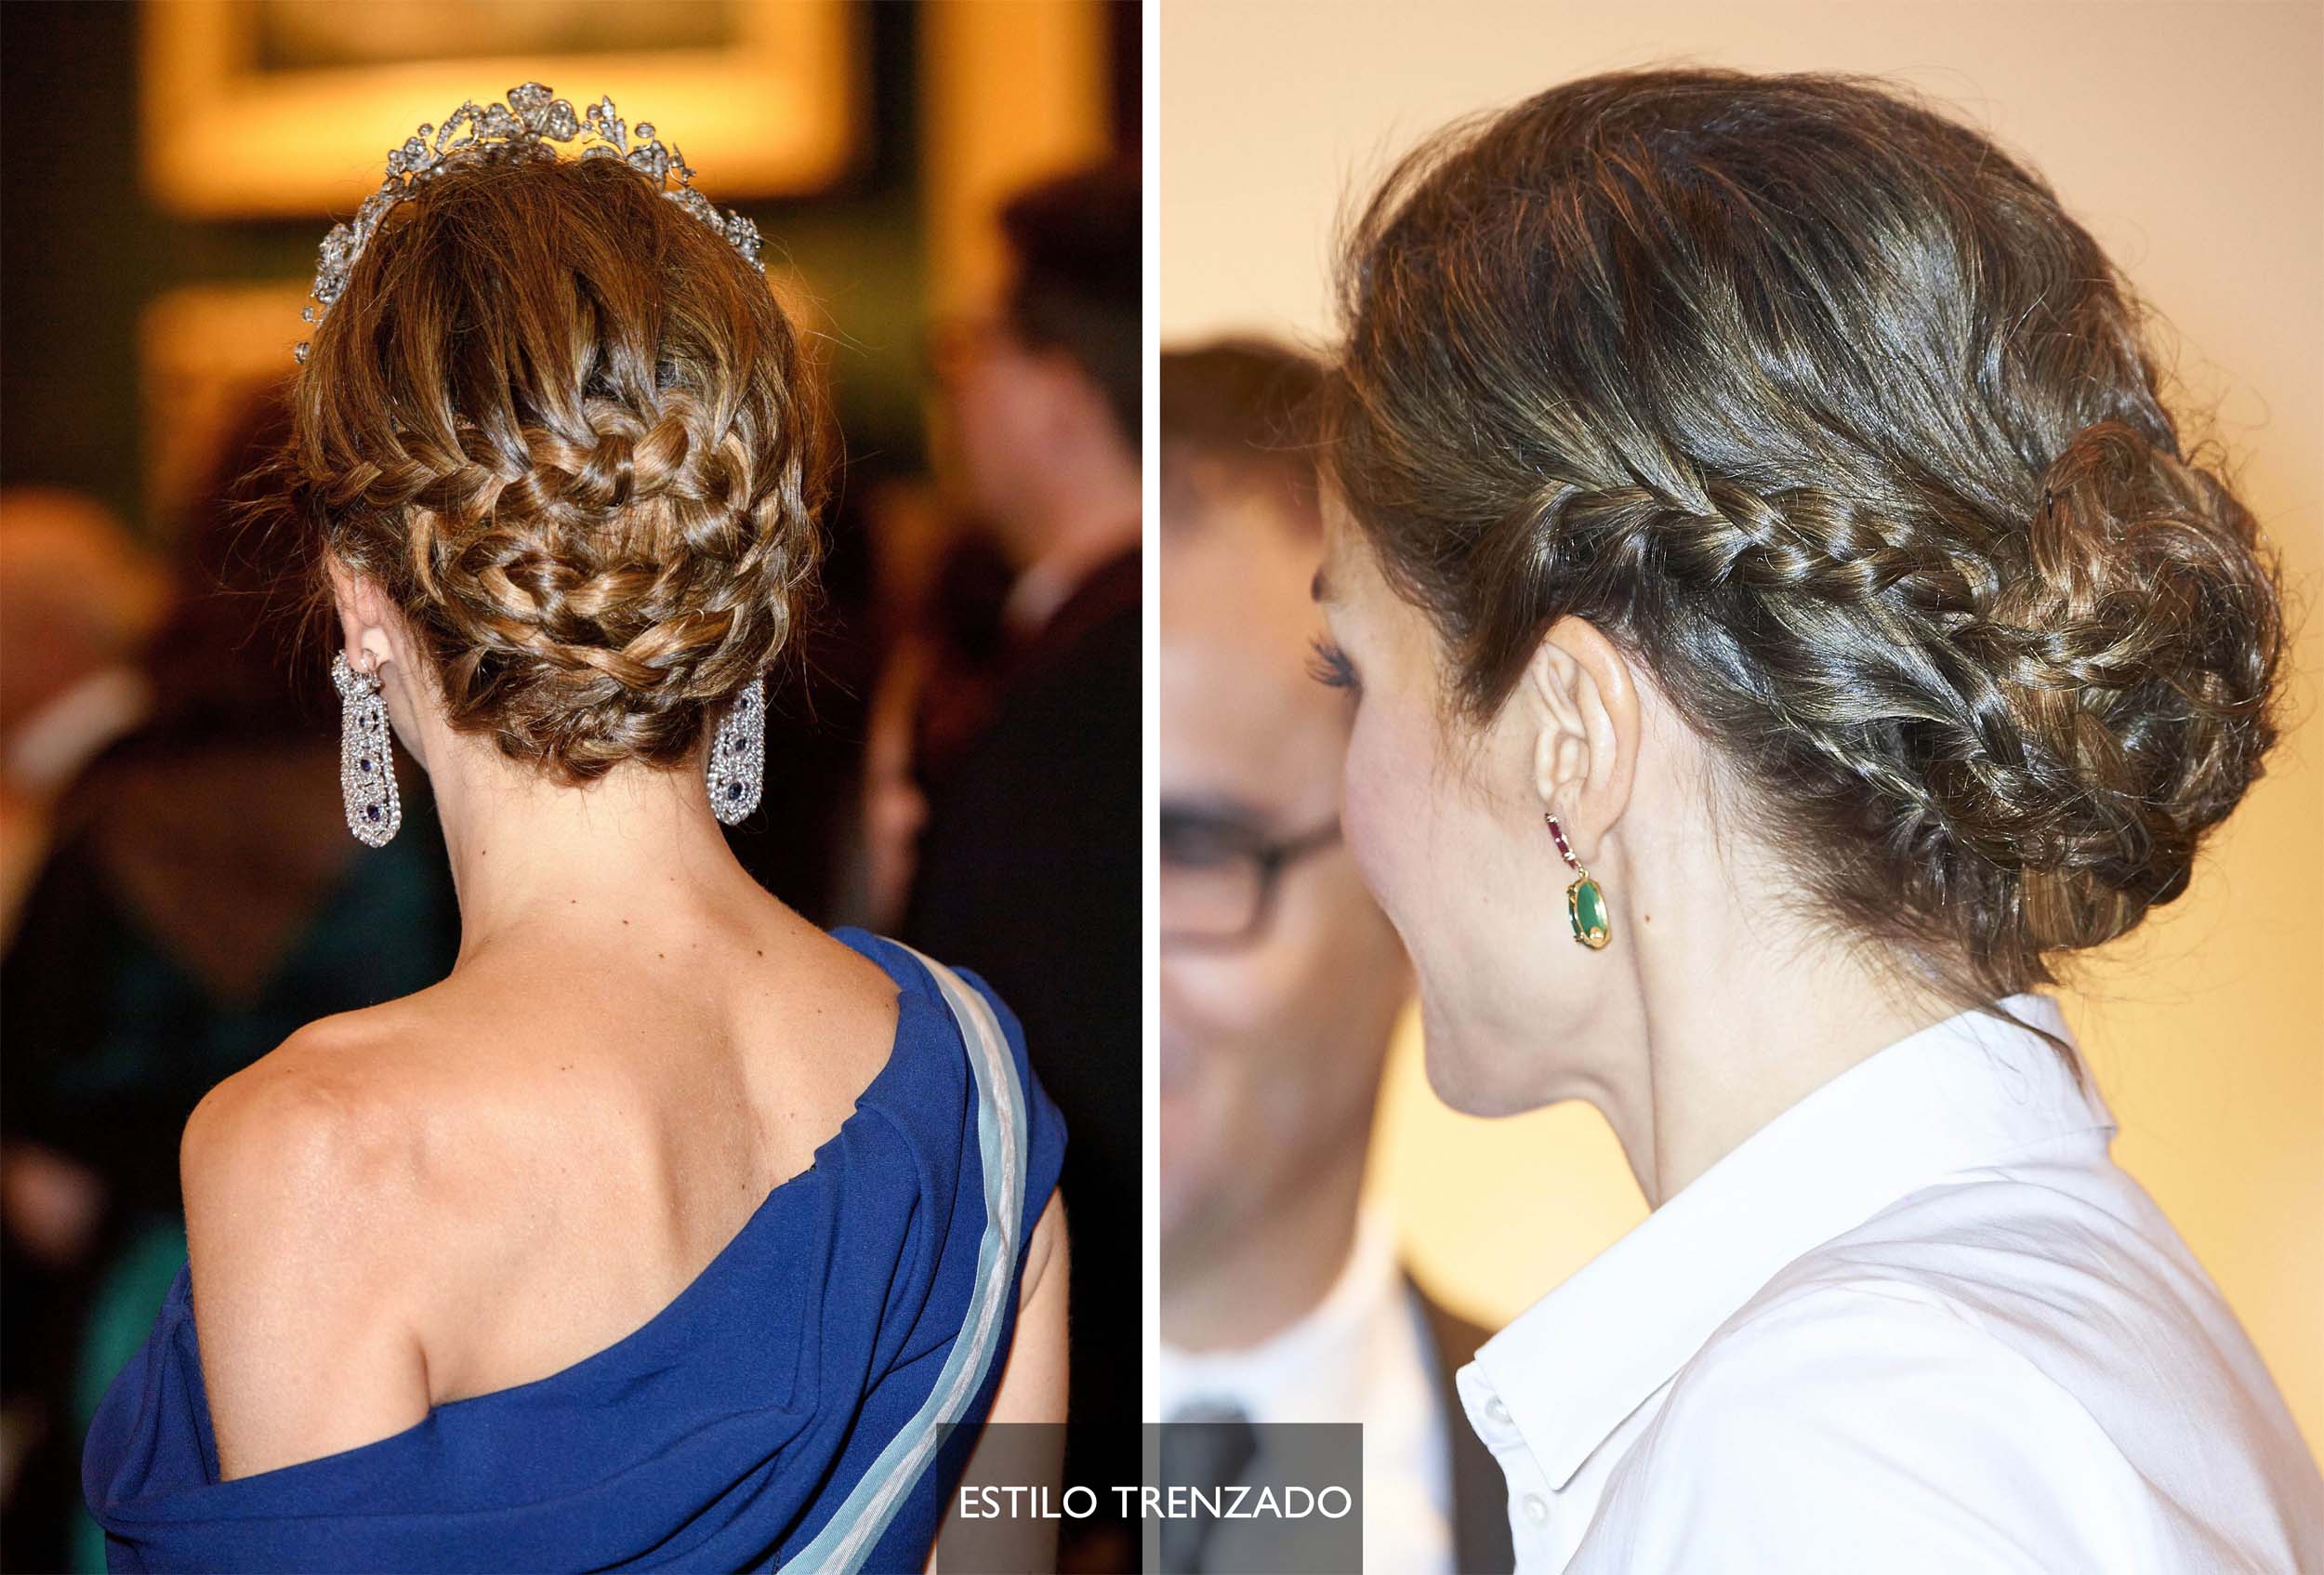 Los 50 mejores peinados de la reina Letizia en fotos